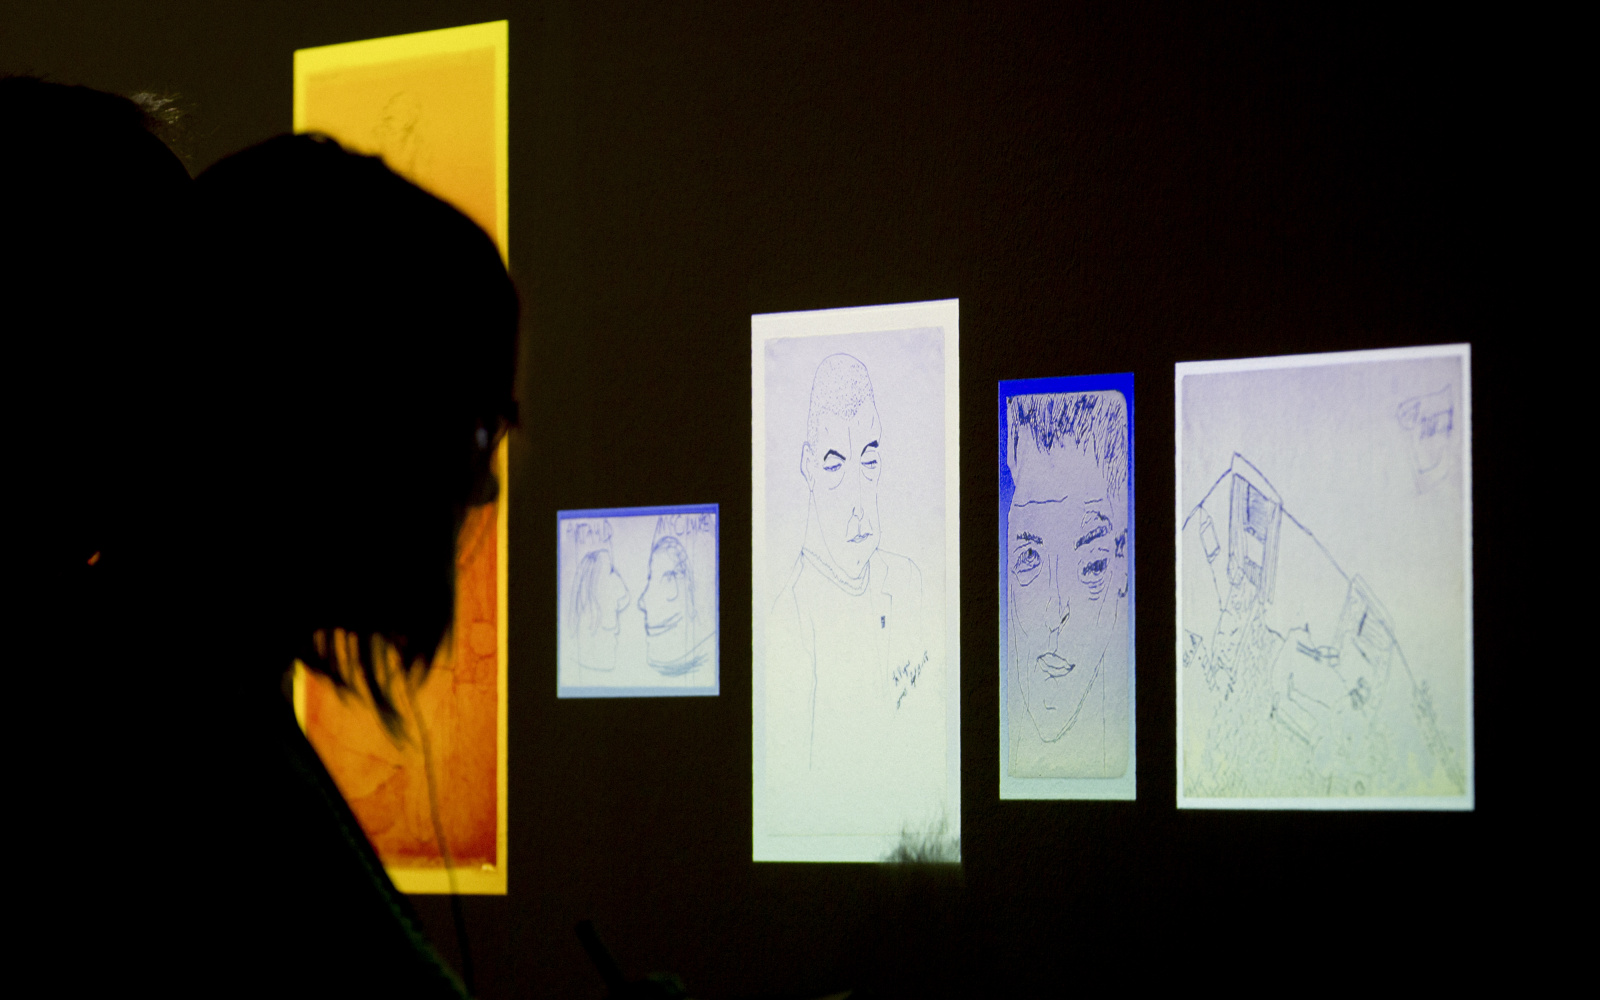 Eine Person blickt im Dunkeln auf beleuchtete Zeichnungen